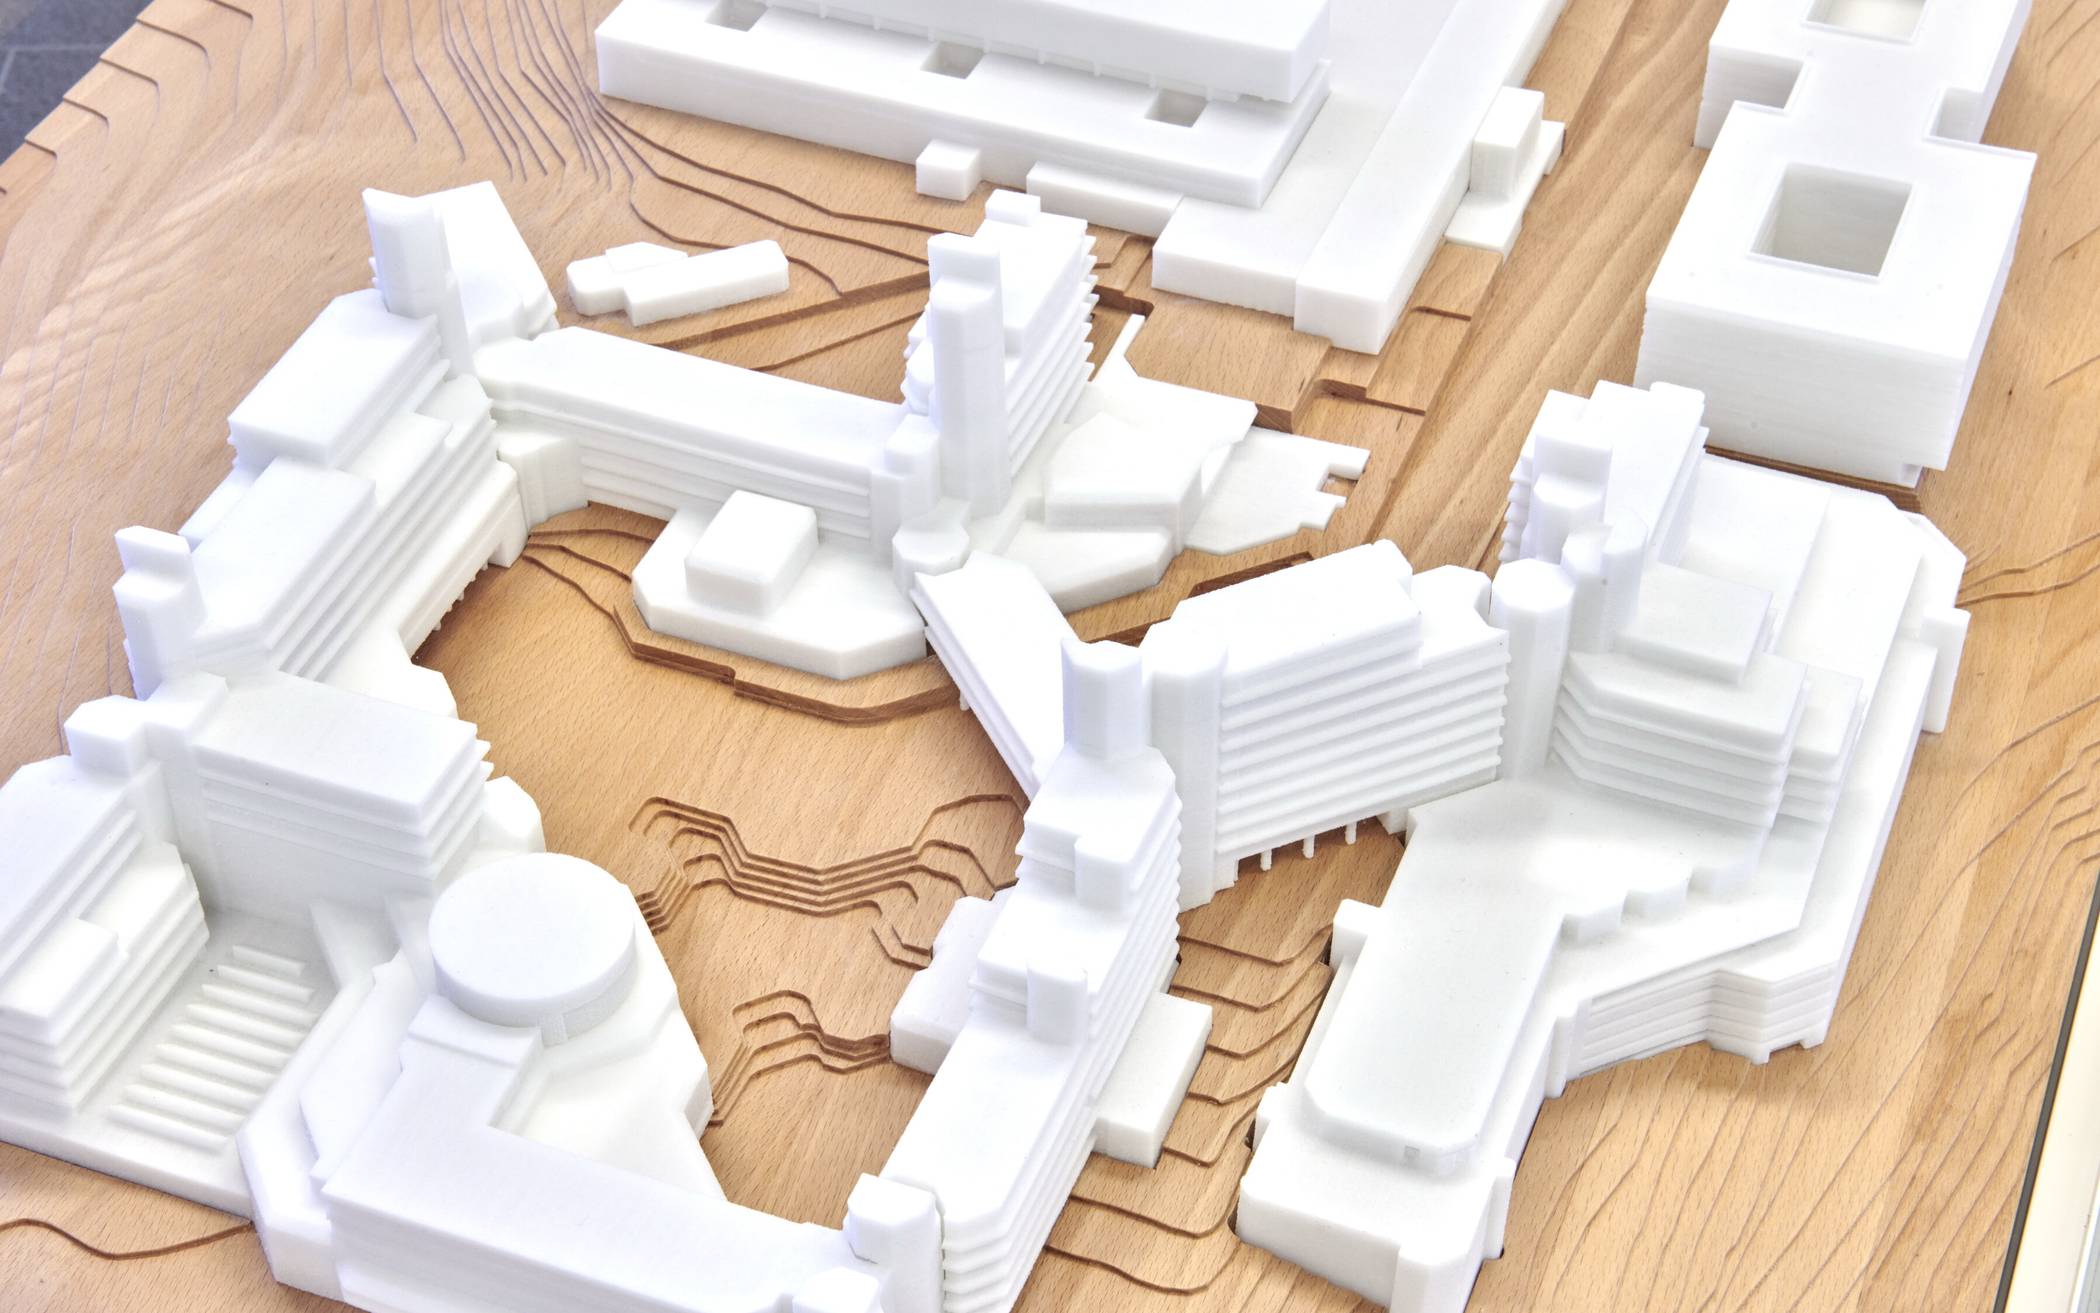  Das Modell besteht aus einer aus Massivholz gefrästen Landschaft sowie aus hochwertigem Kunststoff gefertigten Gebäuden, die aus dem 3D-Drucker kommen. 